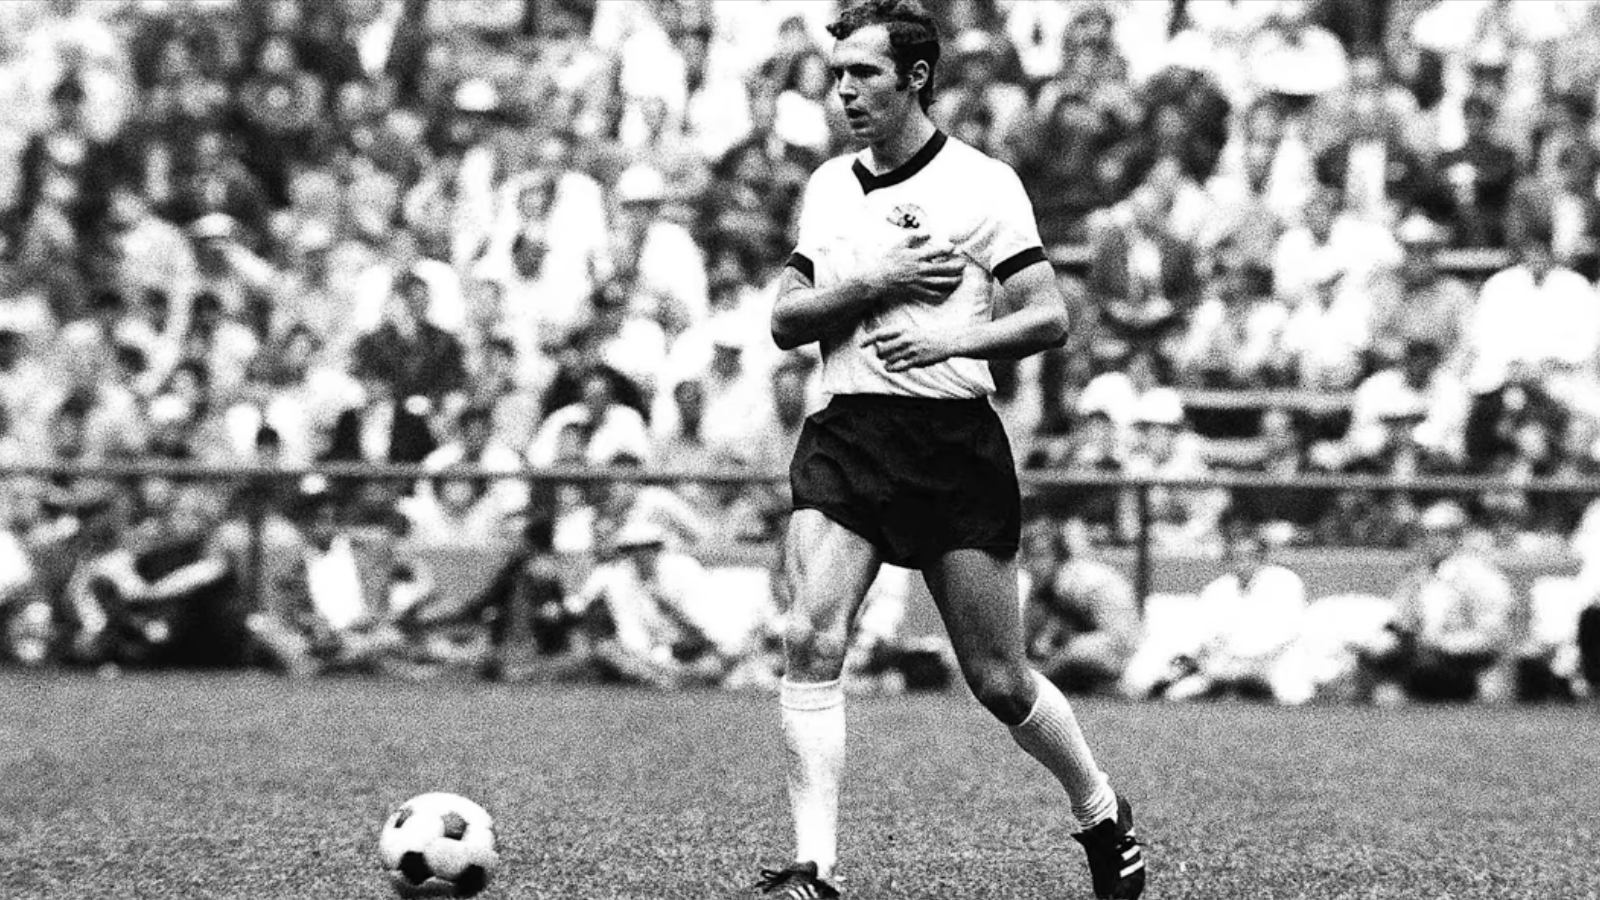 Franz Beckenbauer dies: German football legend nicknamed 'Der Kaiser' passes away at age of 78 | Football News - The Indian Express